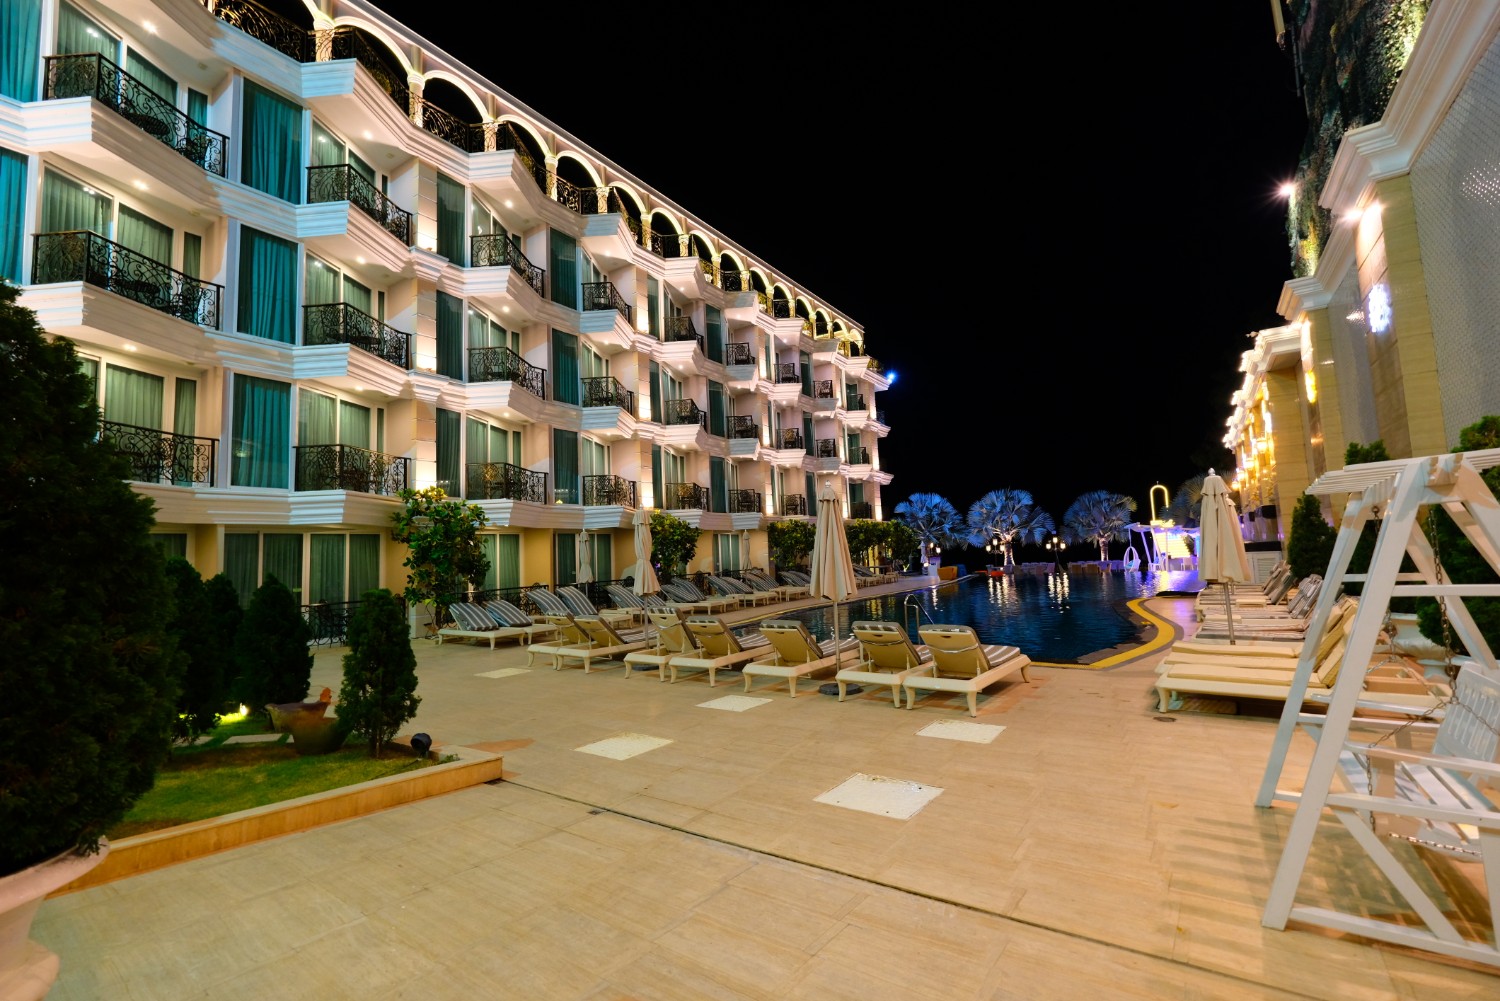 โรงแรม lk emerald beach hotel